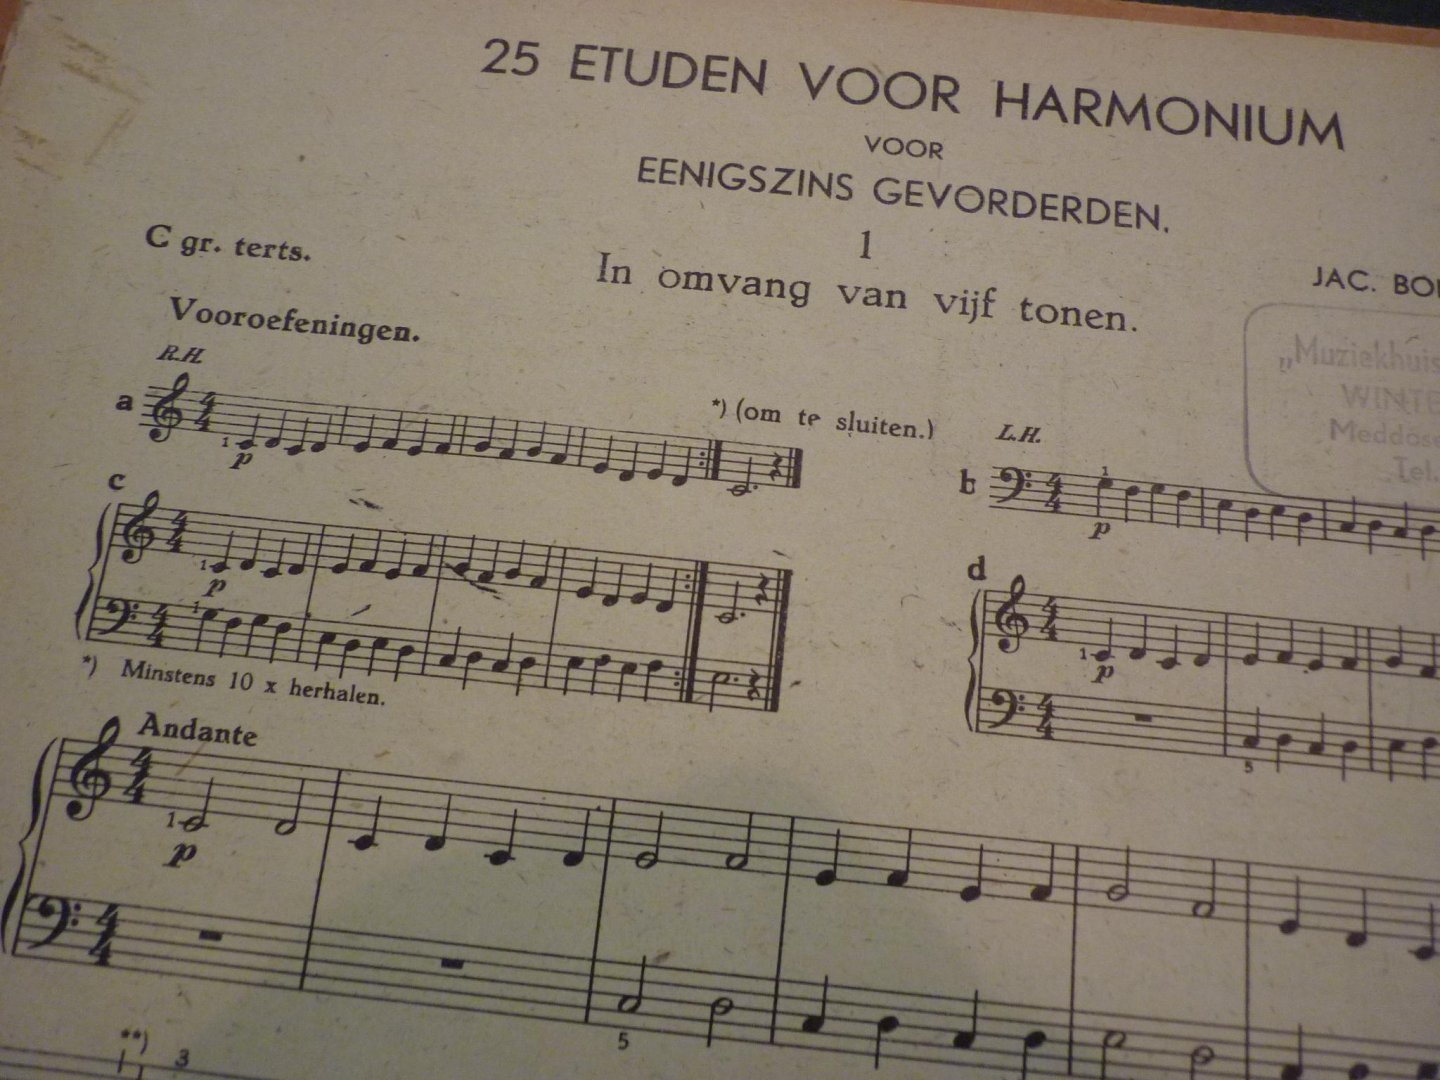 Bonset; Jac. - 25 Etuden voor Harmonium voor gevorderden; Opus 197